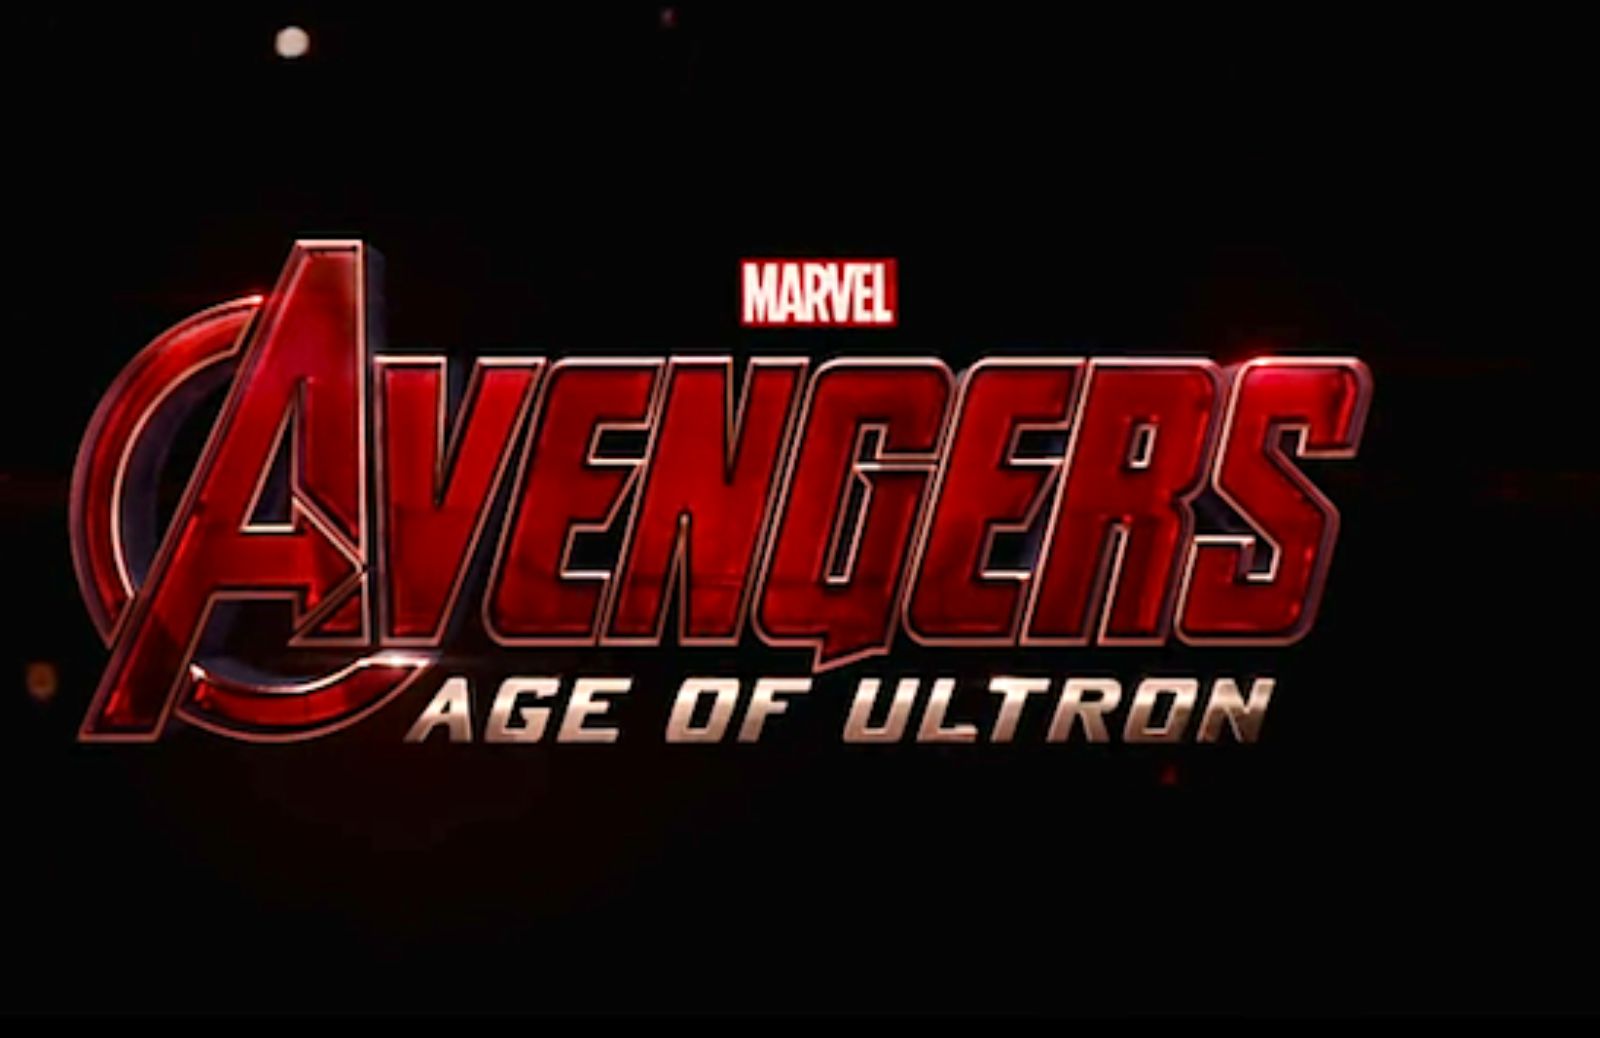 In arrivo il sequel di The Avengers, i supereroi Marvel